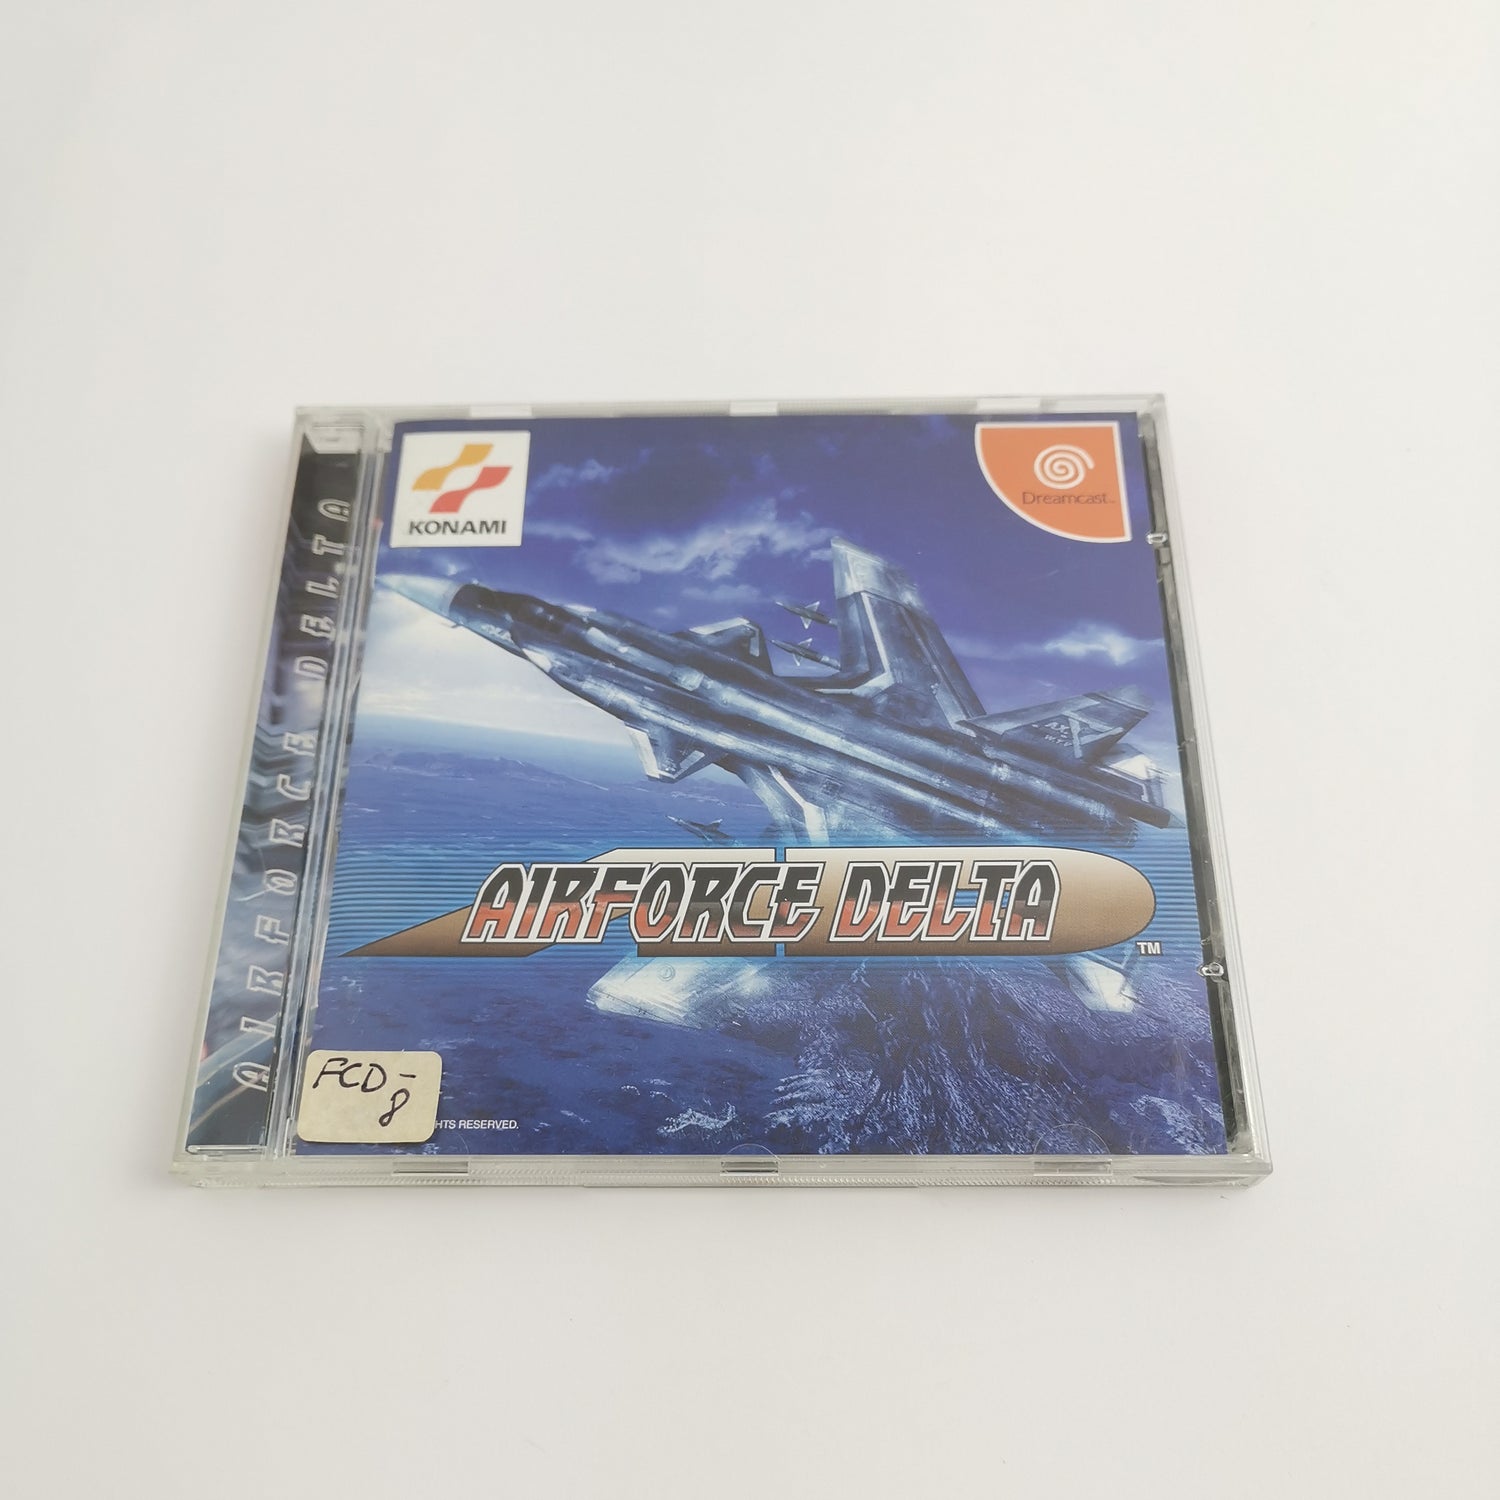 Sega Dreamcast Game: Air Force Delta | DC Dream Cast - OVP NTSC-J JAP